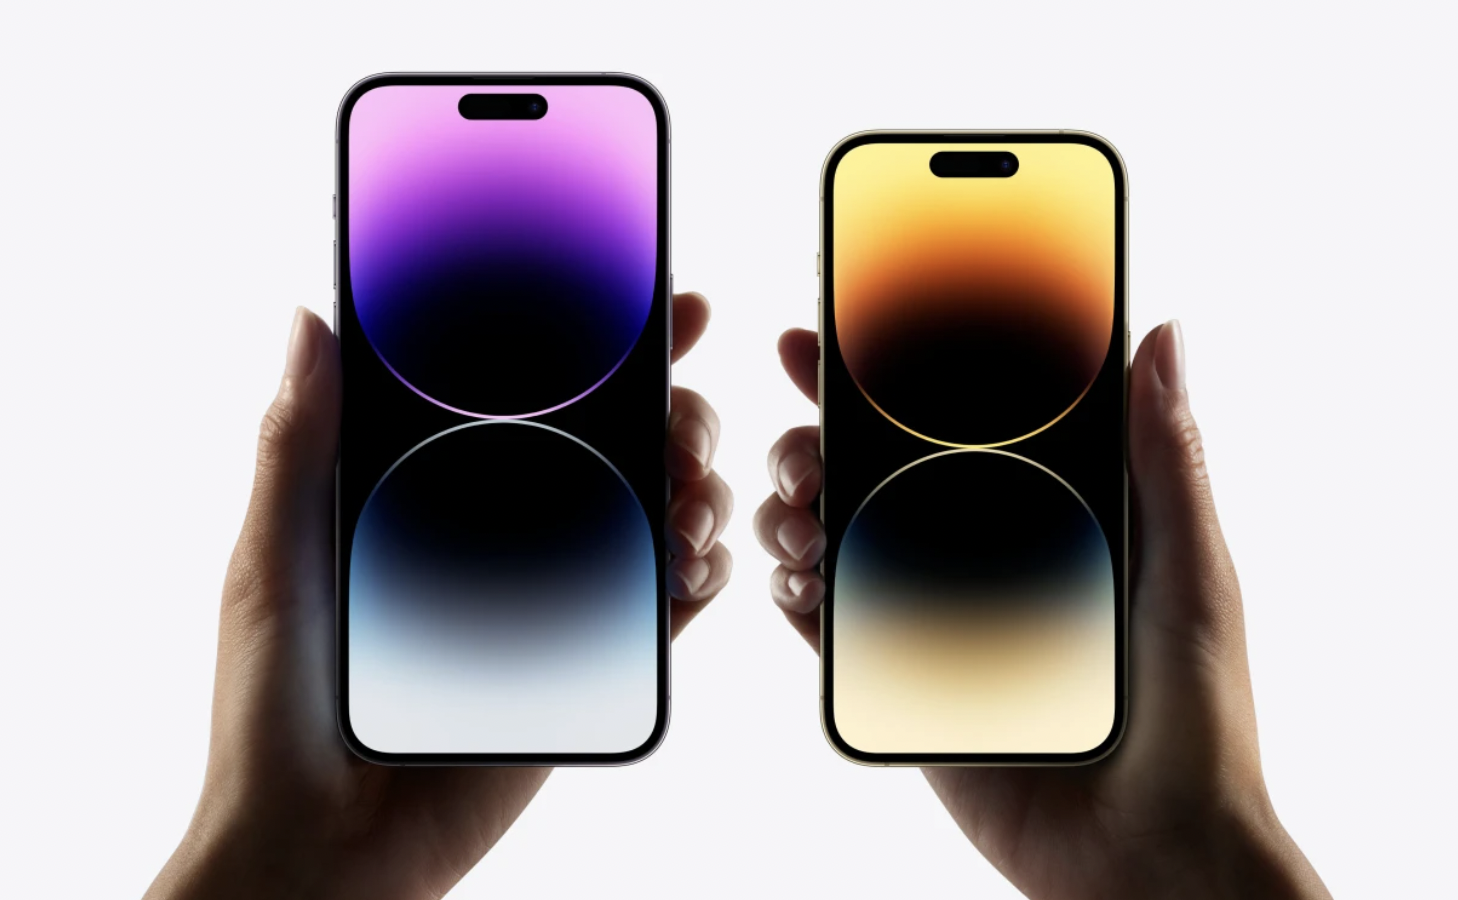 iPhone 14, giá dự kiến, chính hãng, Việt Nam sắp được ra mắt và đang nhận được sự quan tâm của cả giới công nghệ. Với giá dự kiến trong tầm tay và chất lượng hoàn hảo, đây sẽ là một lựa chọn tuyệt vời cho bạn. Hãy theo dõi để biết thêm chi tiết!